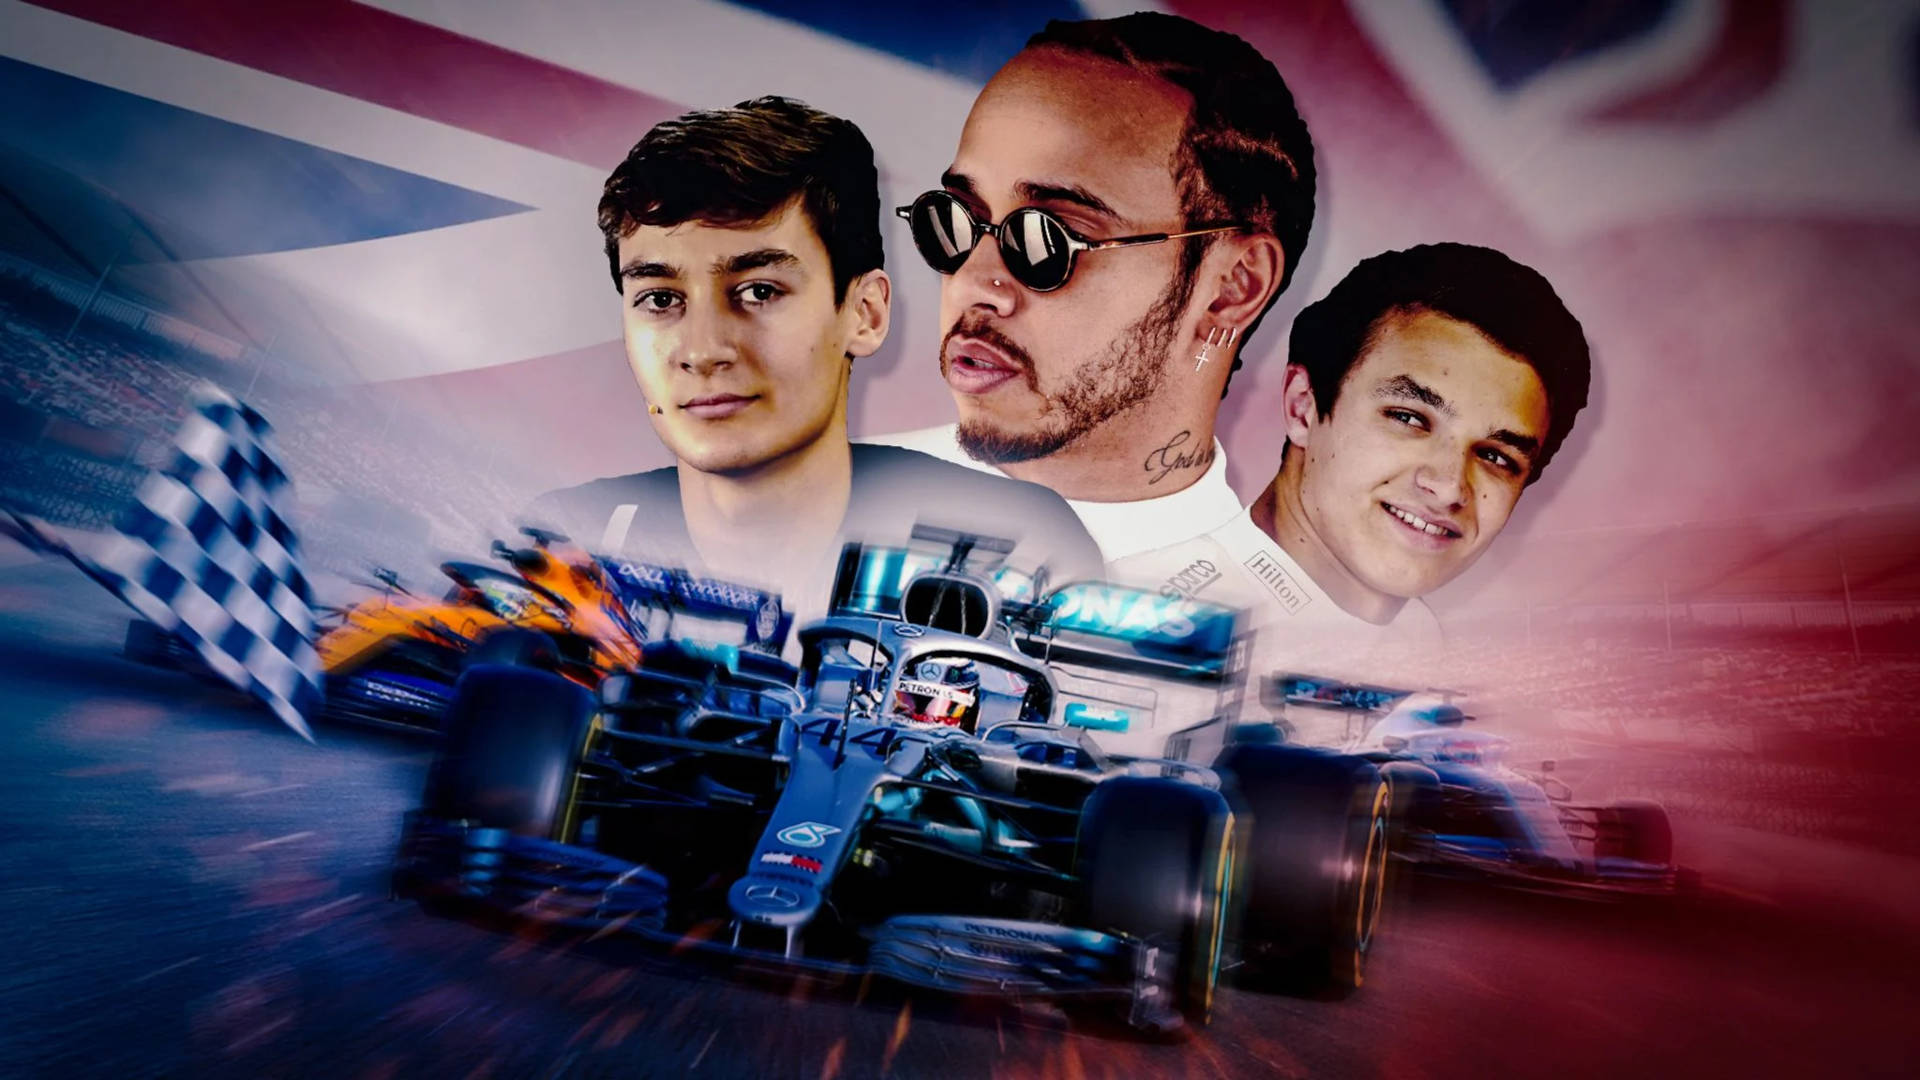 Georgerussel Med Två F1-racers. Wallpaper